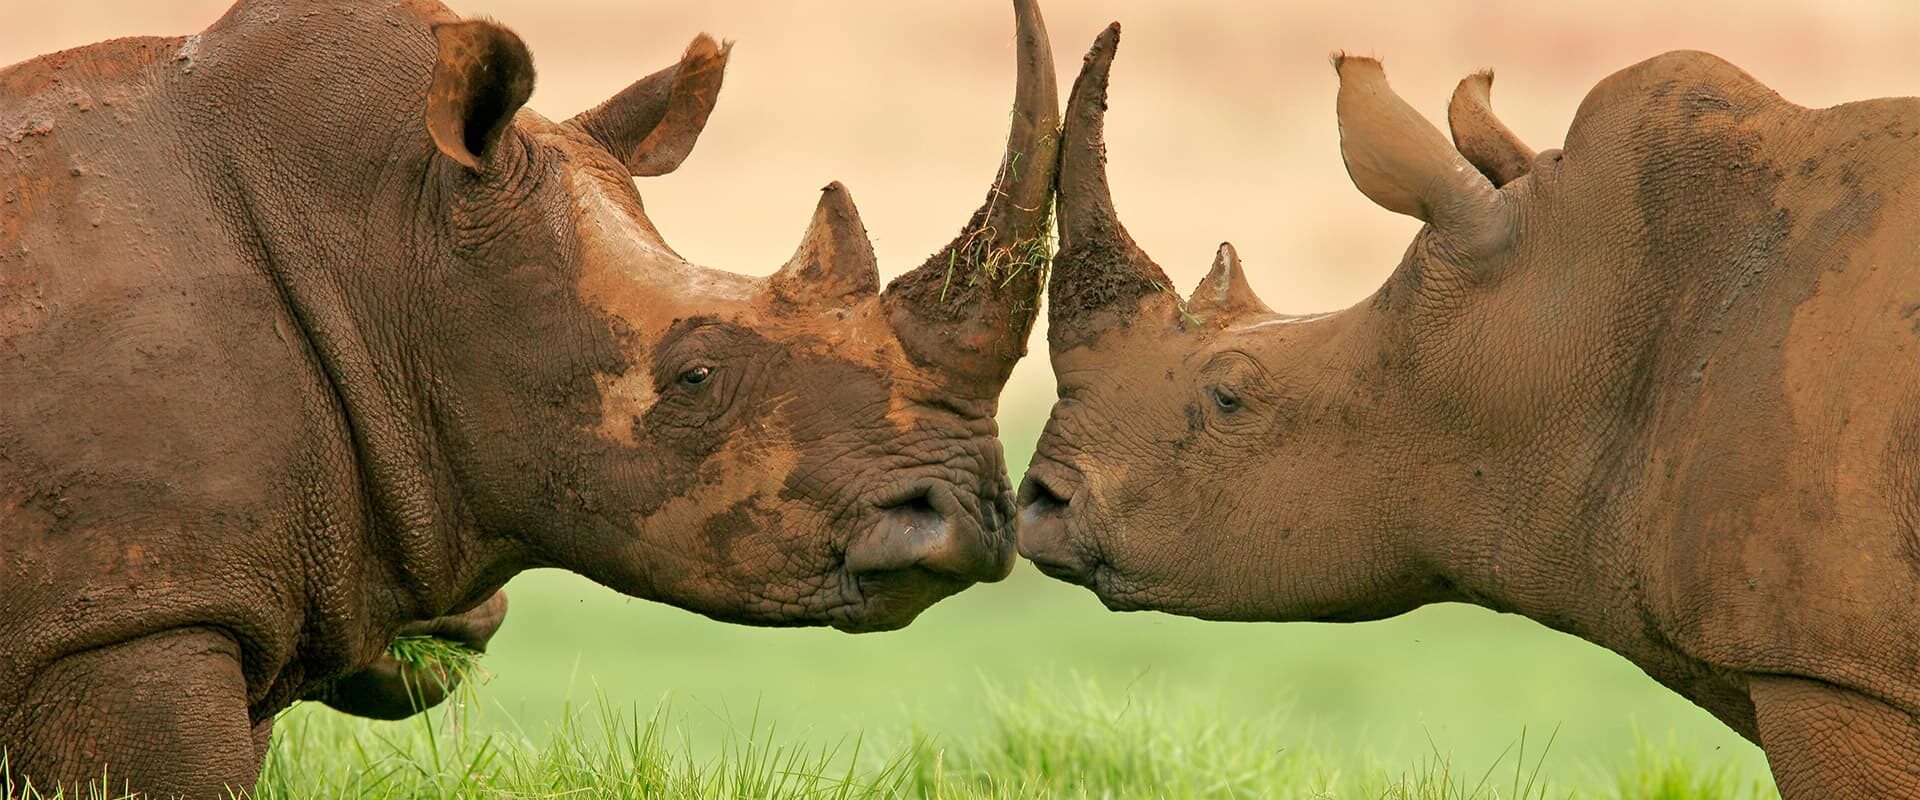 Rhinocéros en Tanzanie